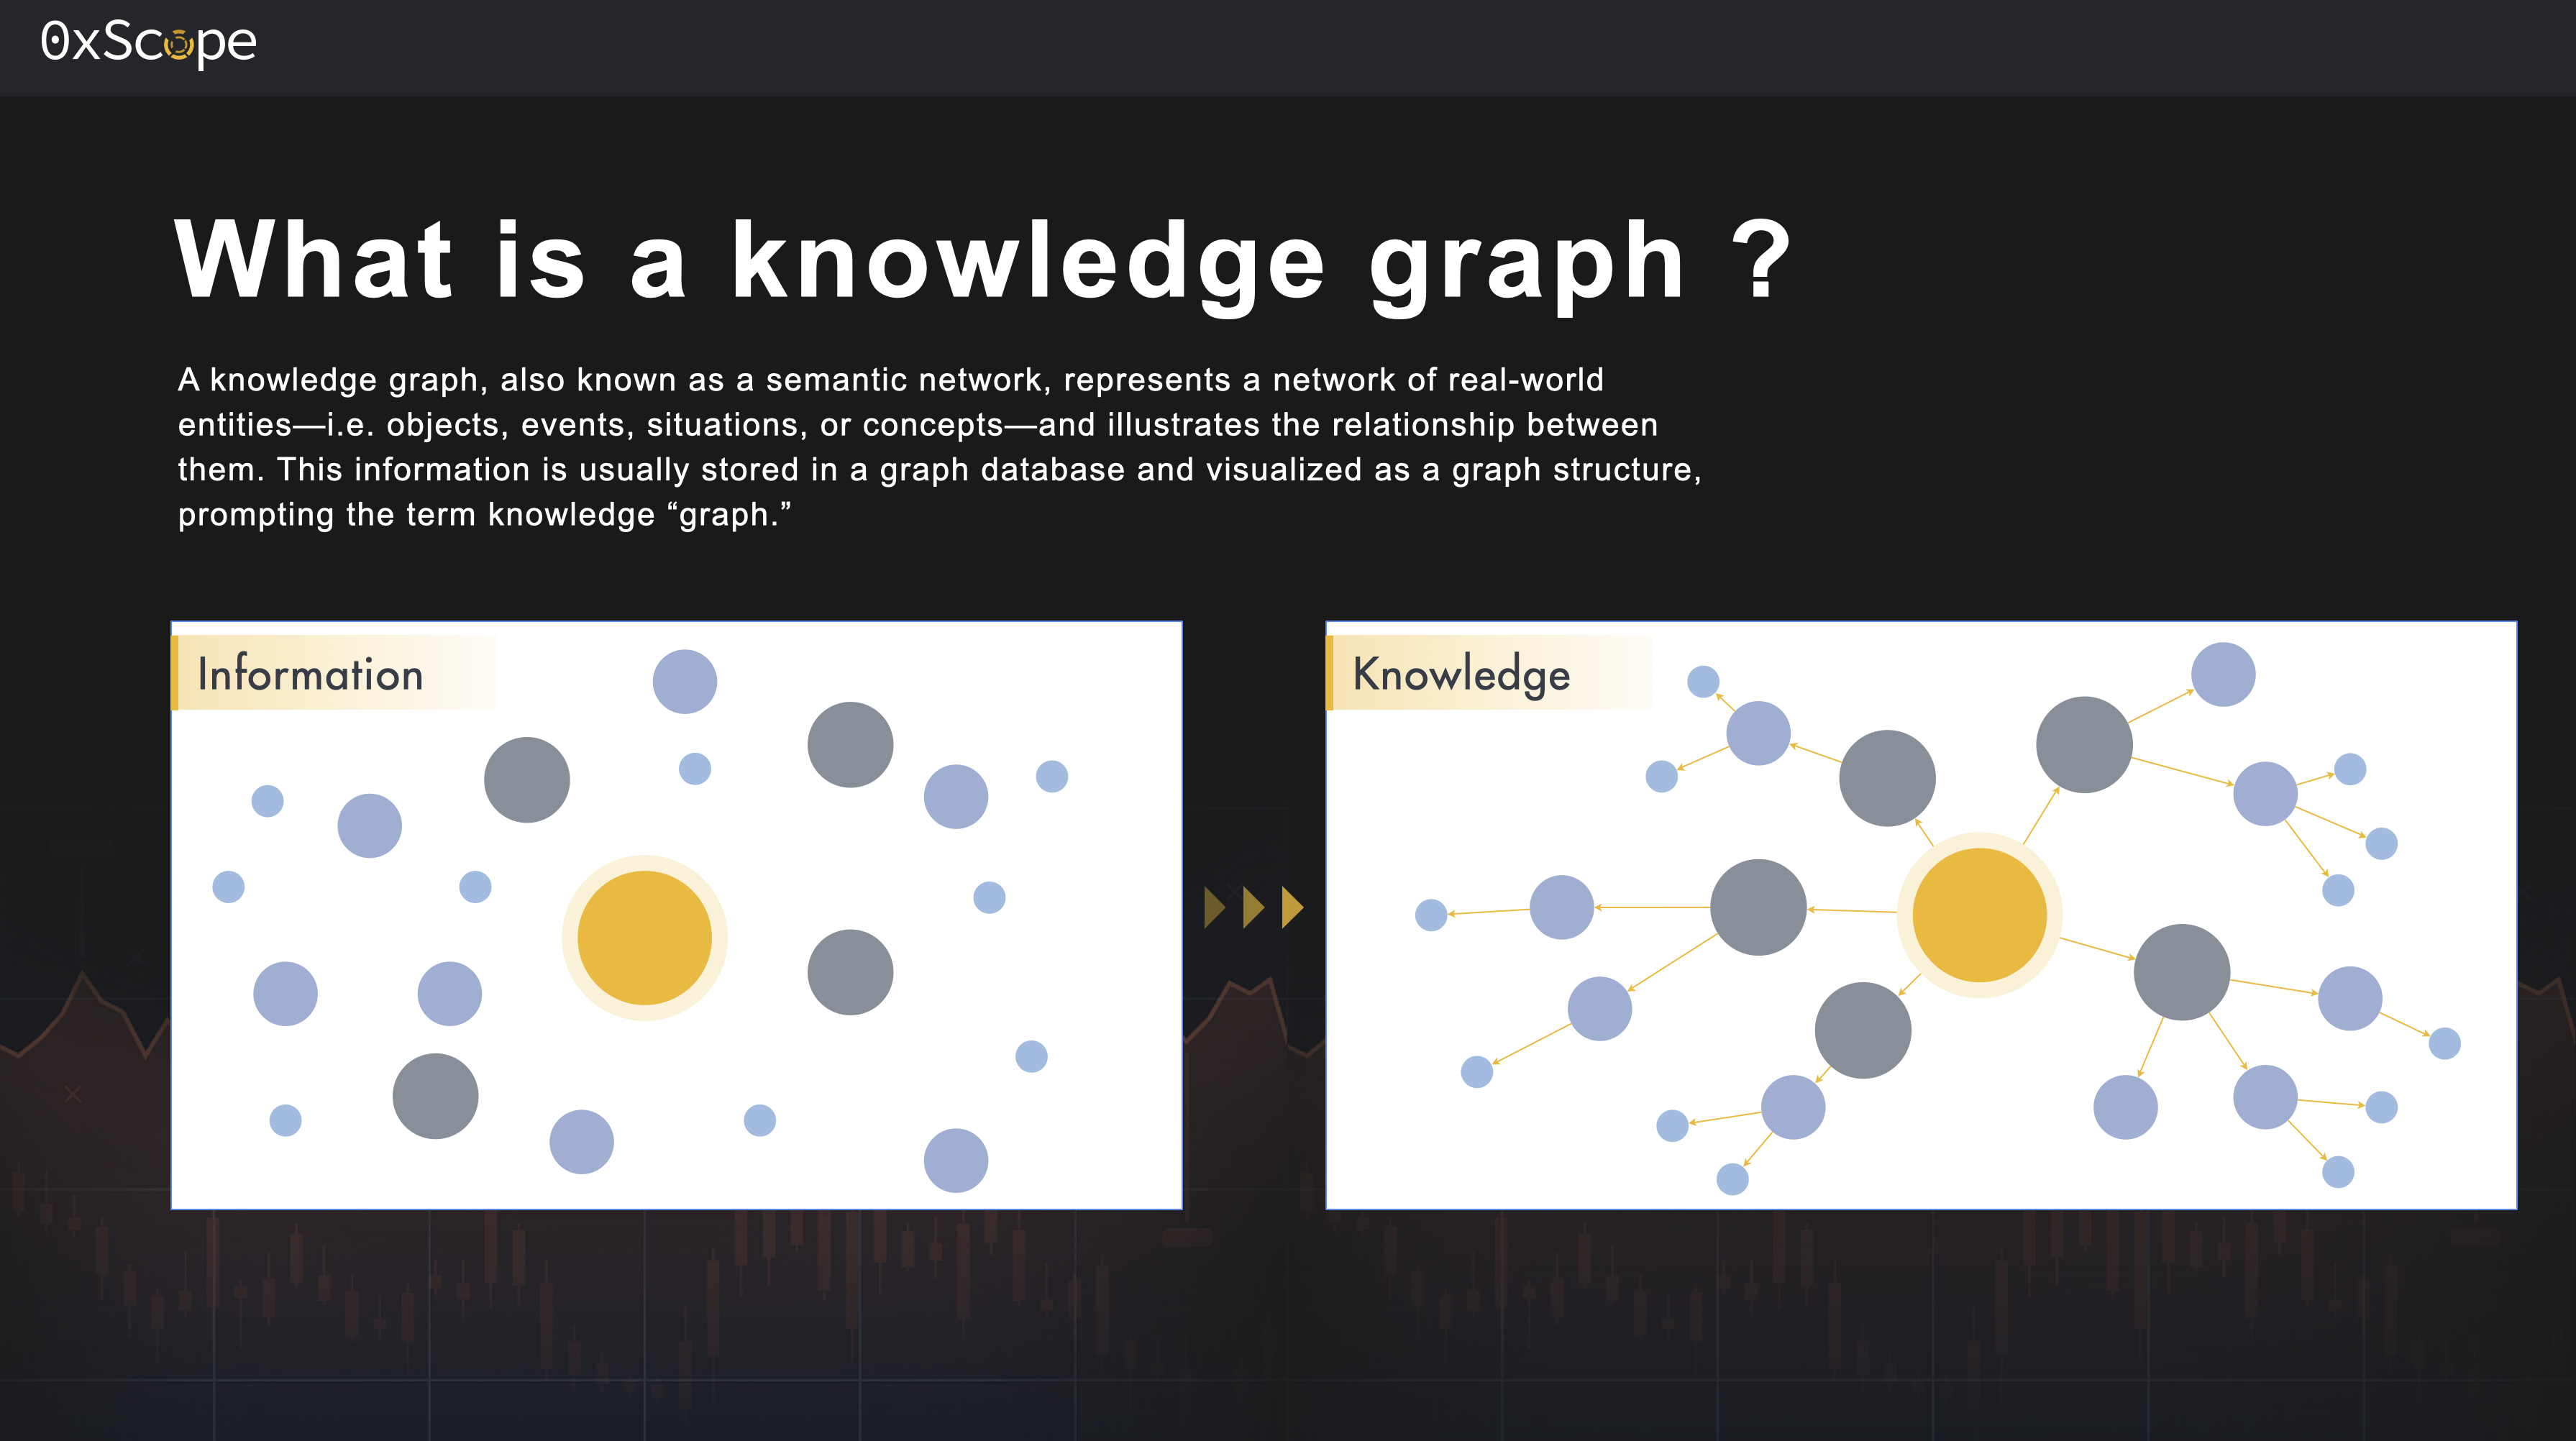 知识图谱 knowledge graph